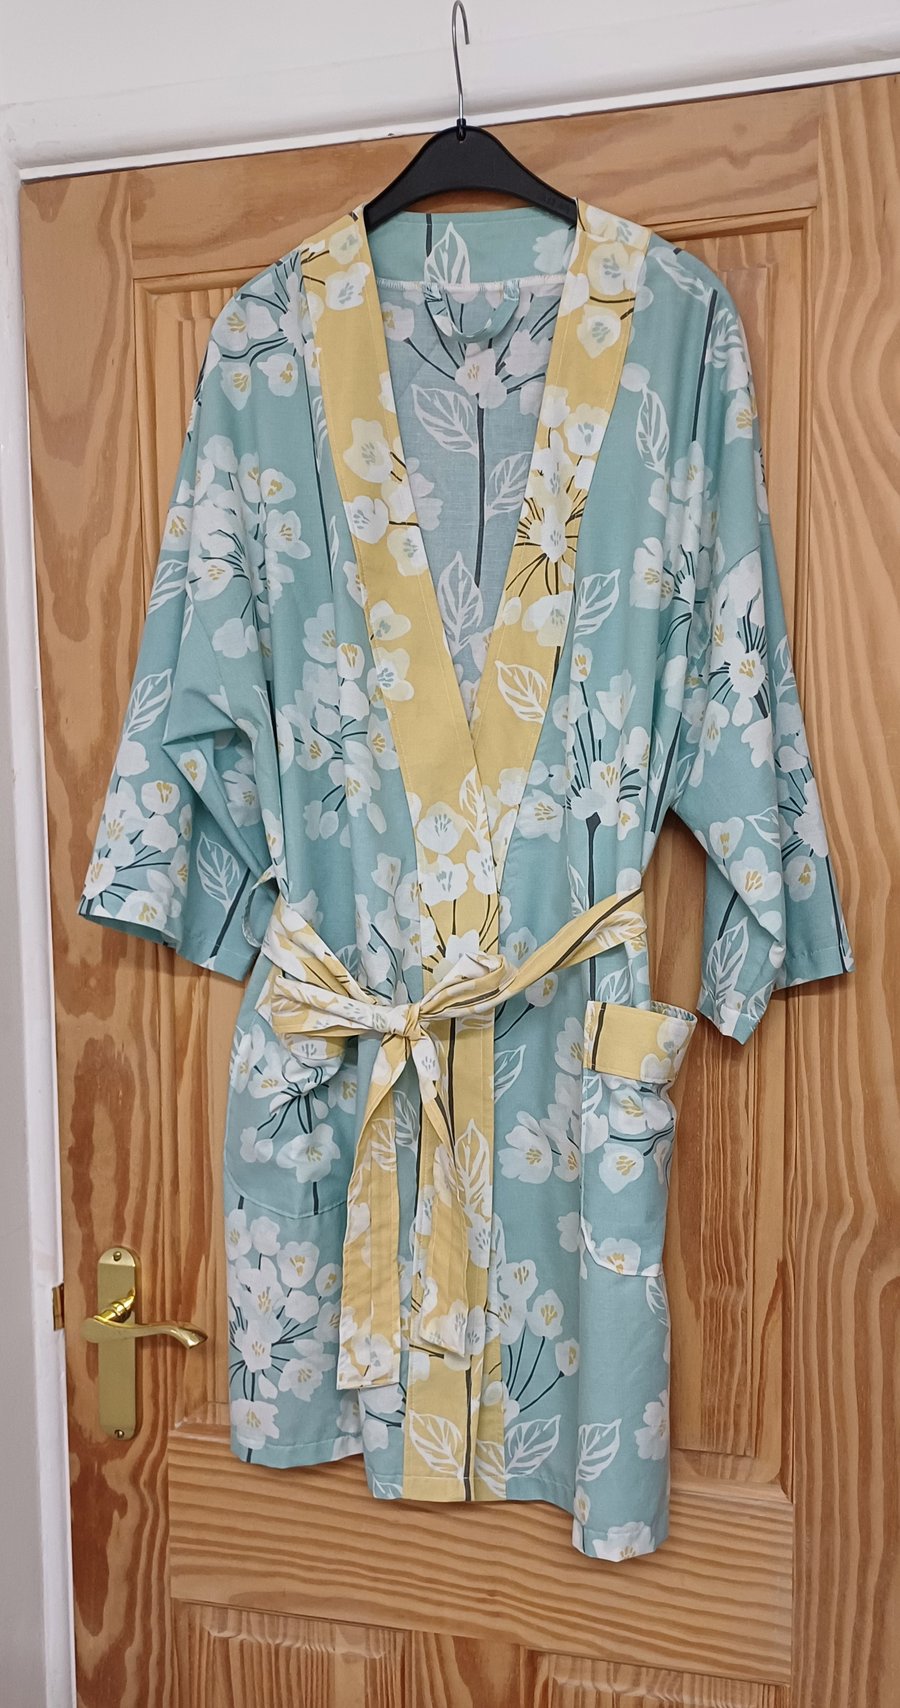 Kimono bath robe pale blue floral dressing gown